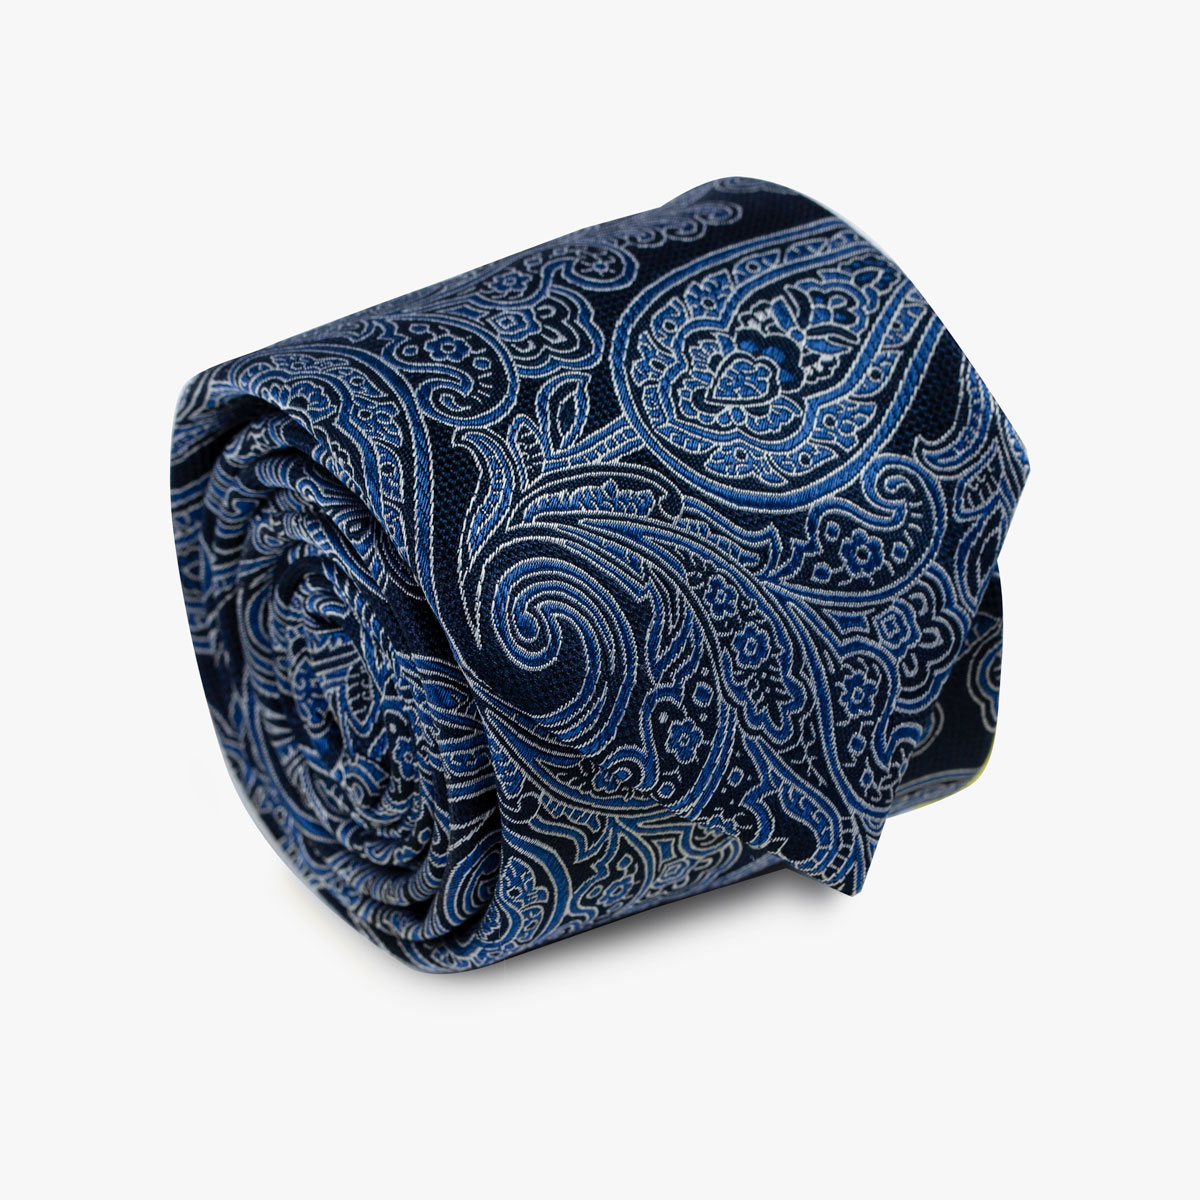 Aufgerollte Krawatte mit Paisley-Muster in dunkelblau